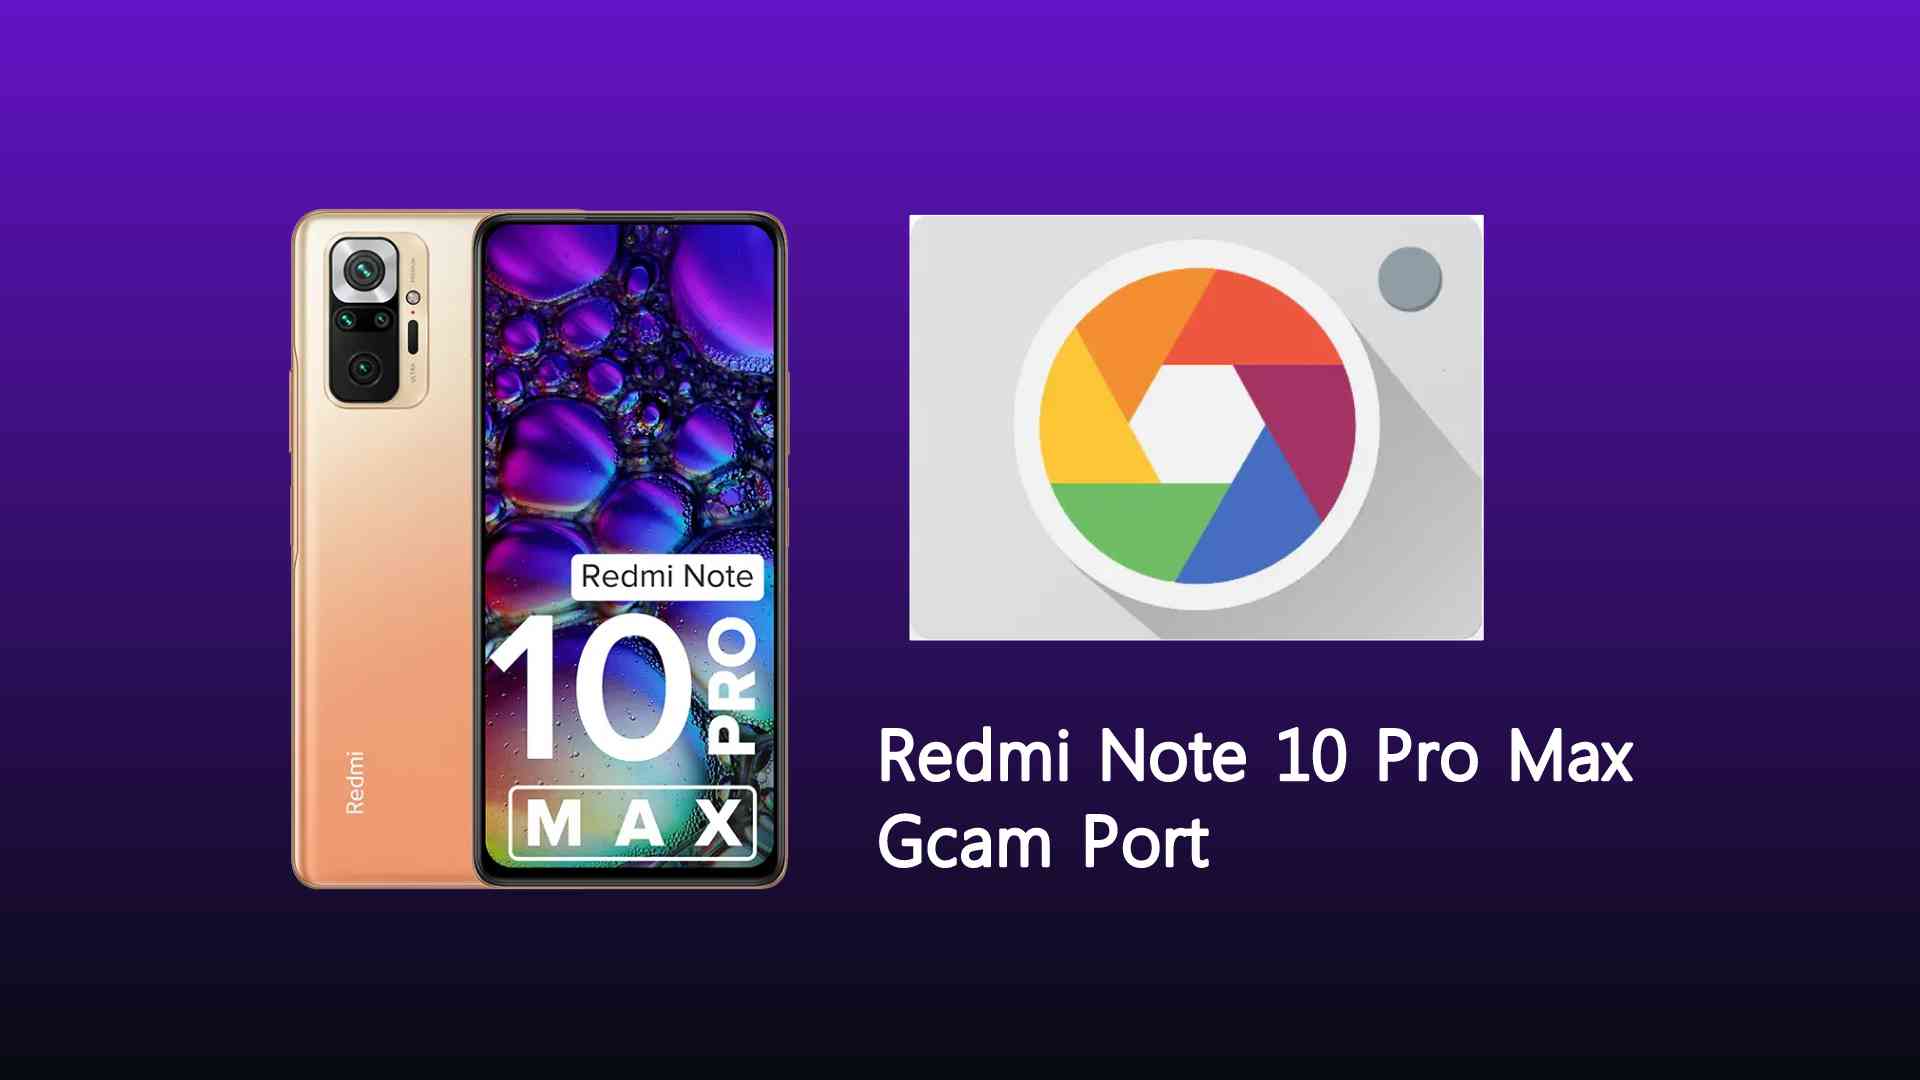 Redmi Note 10 Pro Max Gcam Port